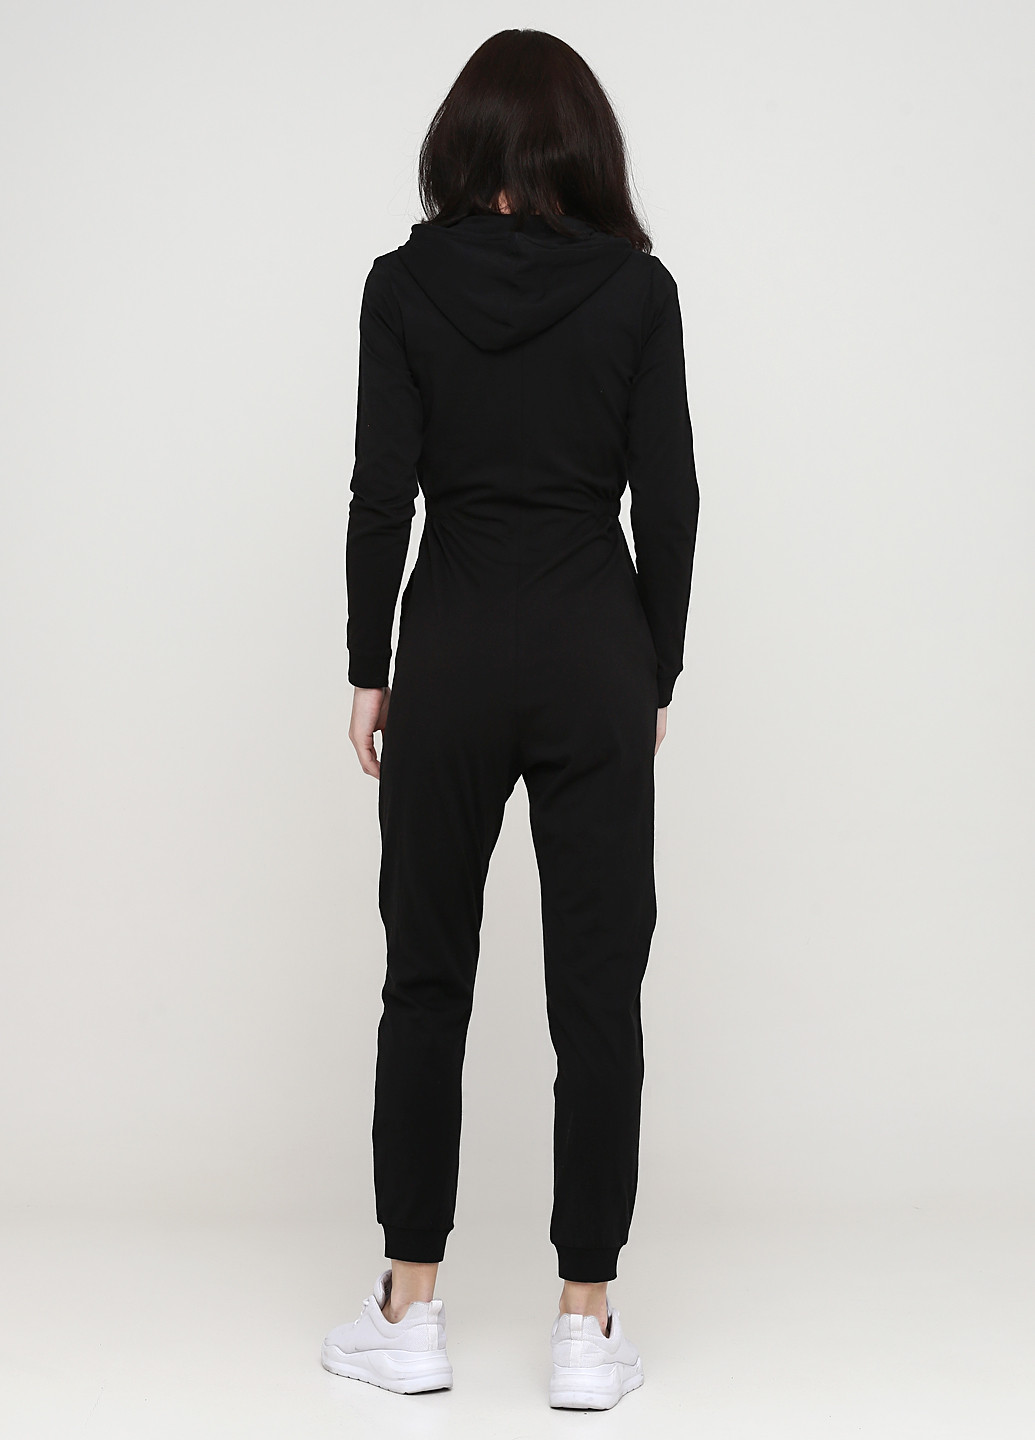 Комбінезон H&M комбінезон-брюки малюнок чорний кежуал трикотаж, бавовна